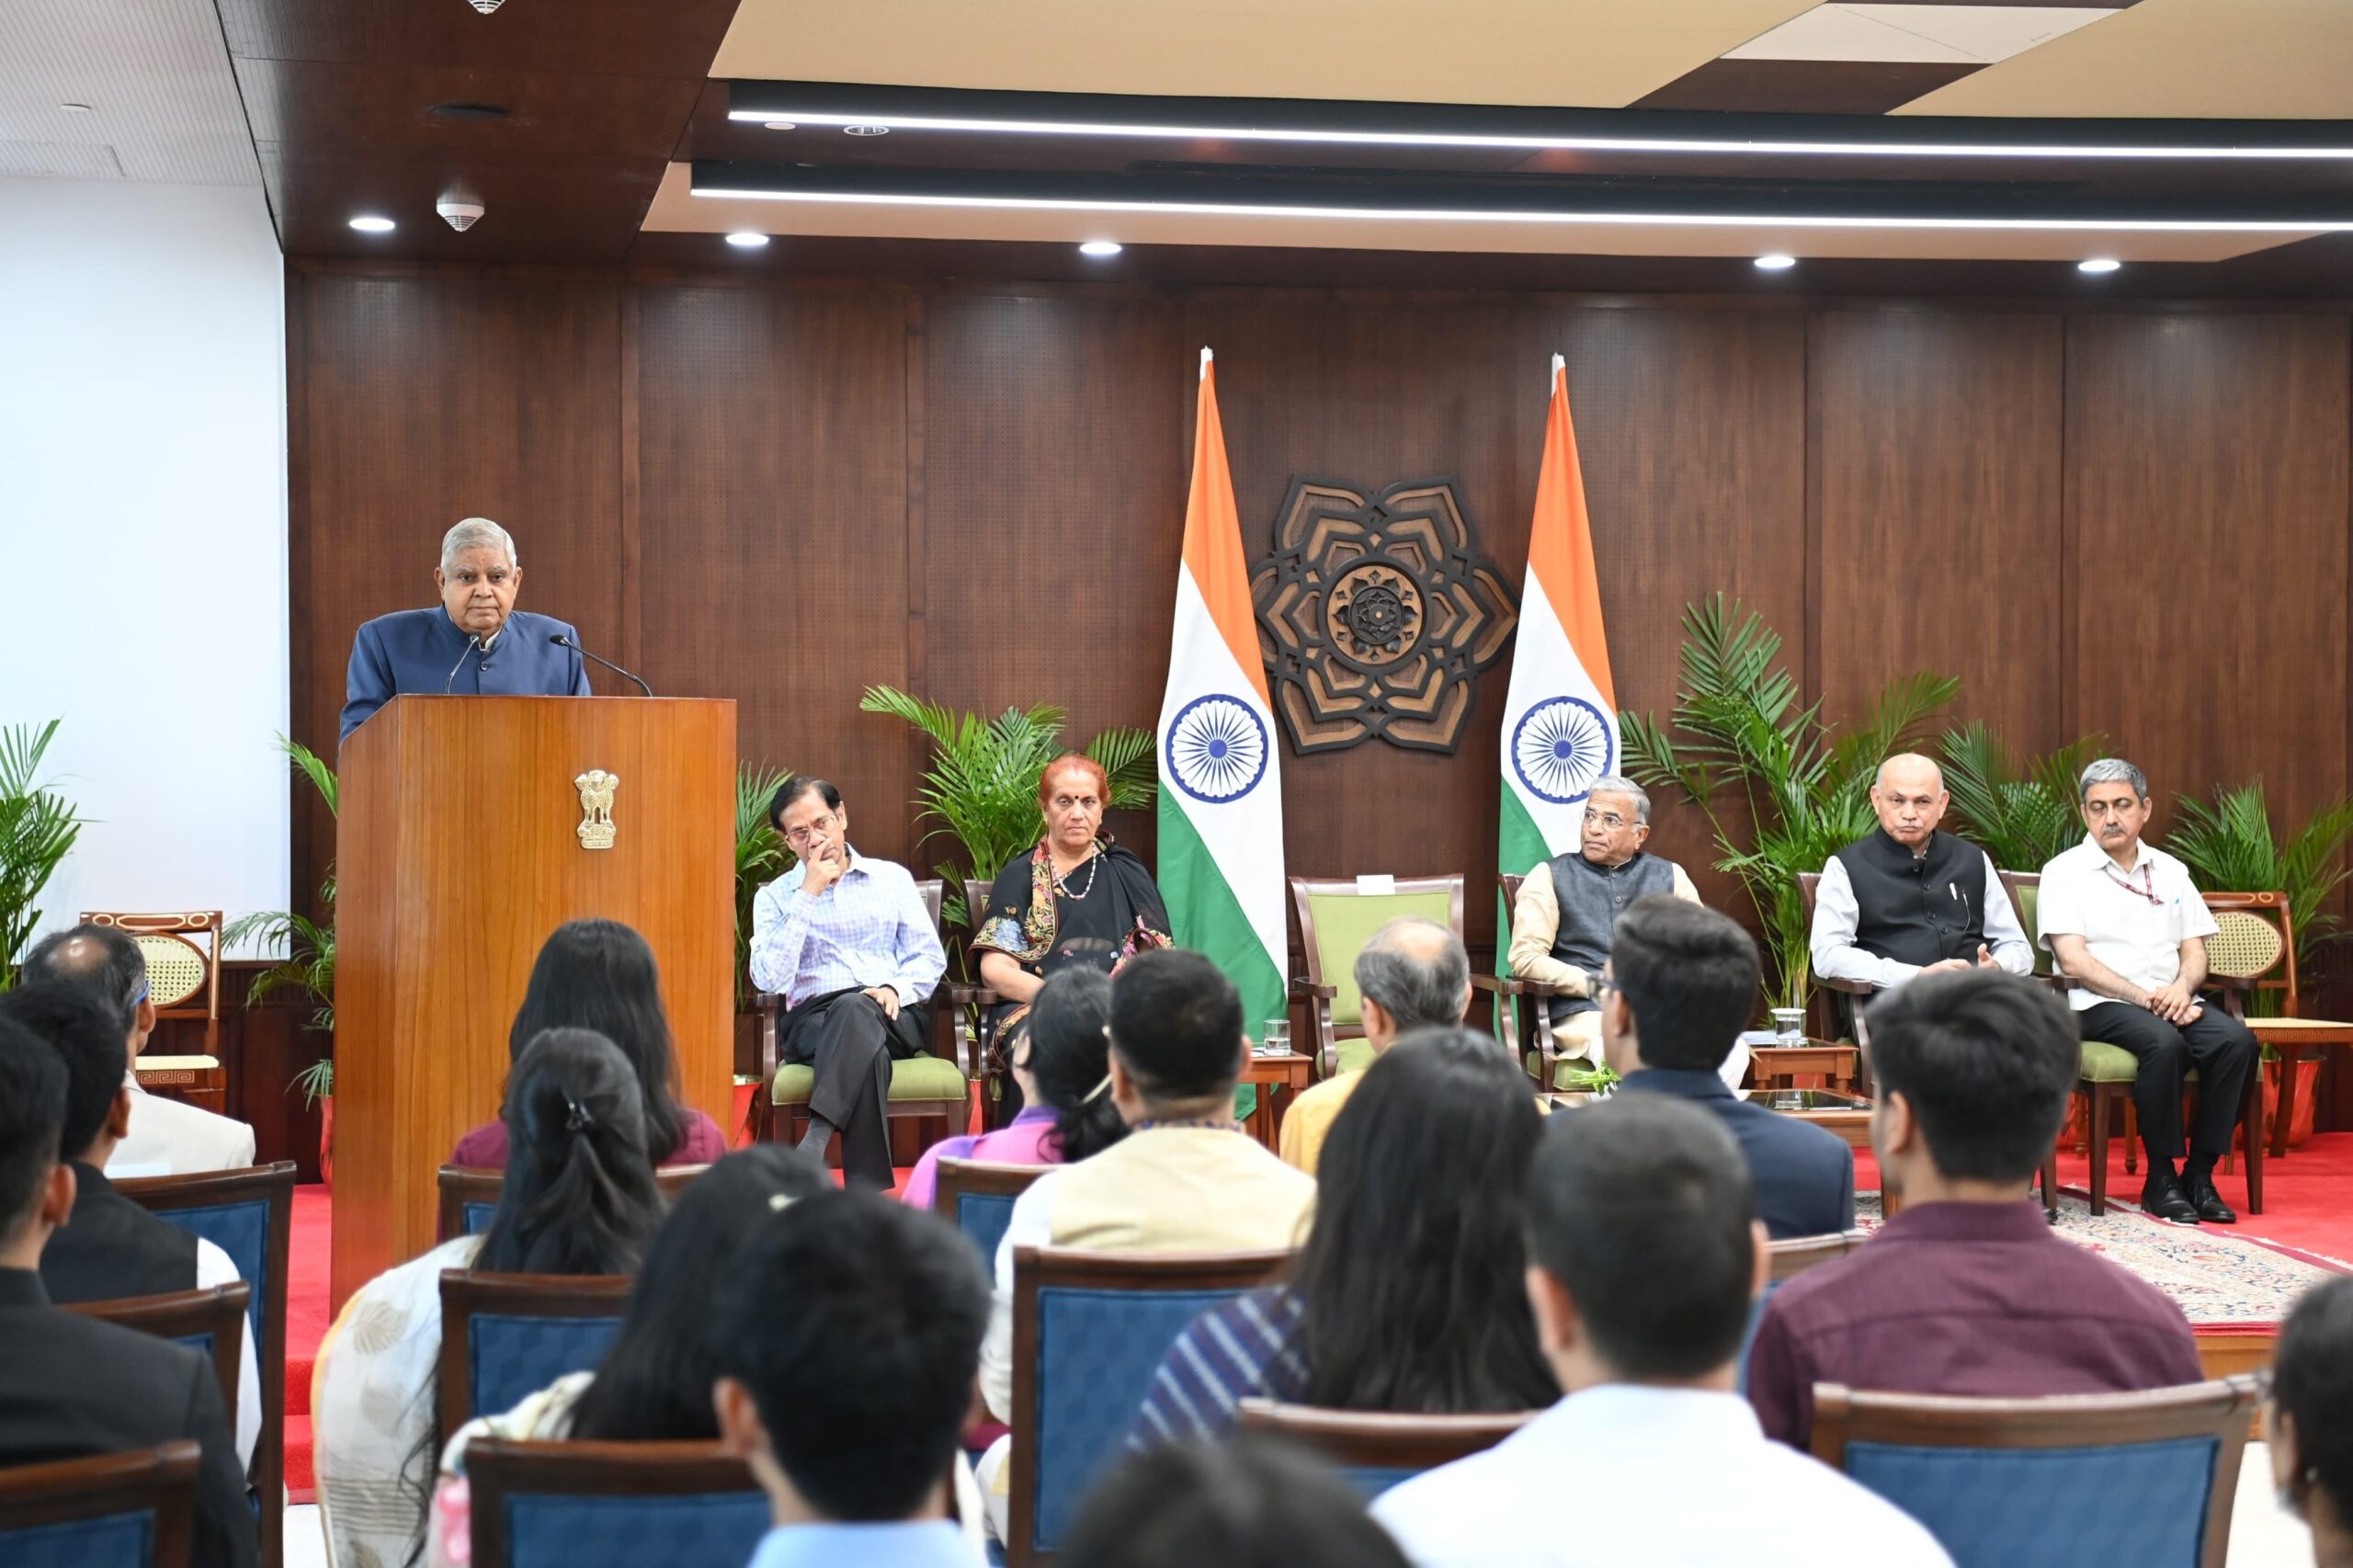 Delhi News: उपराष्ट्रपति ने राज्यसभा इंटर्नशिप कार्यक्रम के प्रतिभागियों को किया संबोधित, क्‍या बोले मोदी